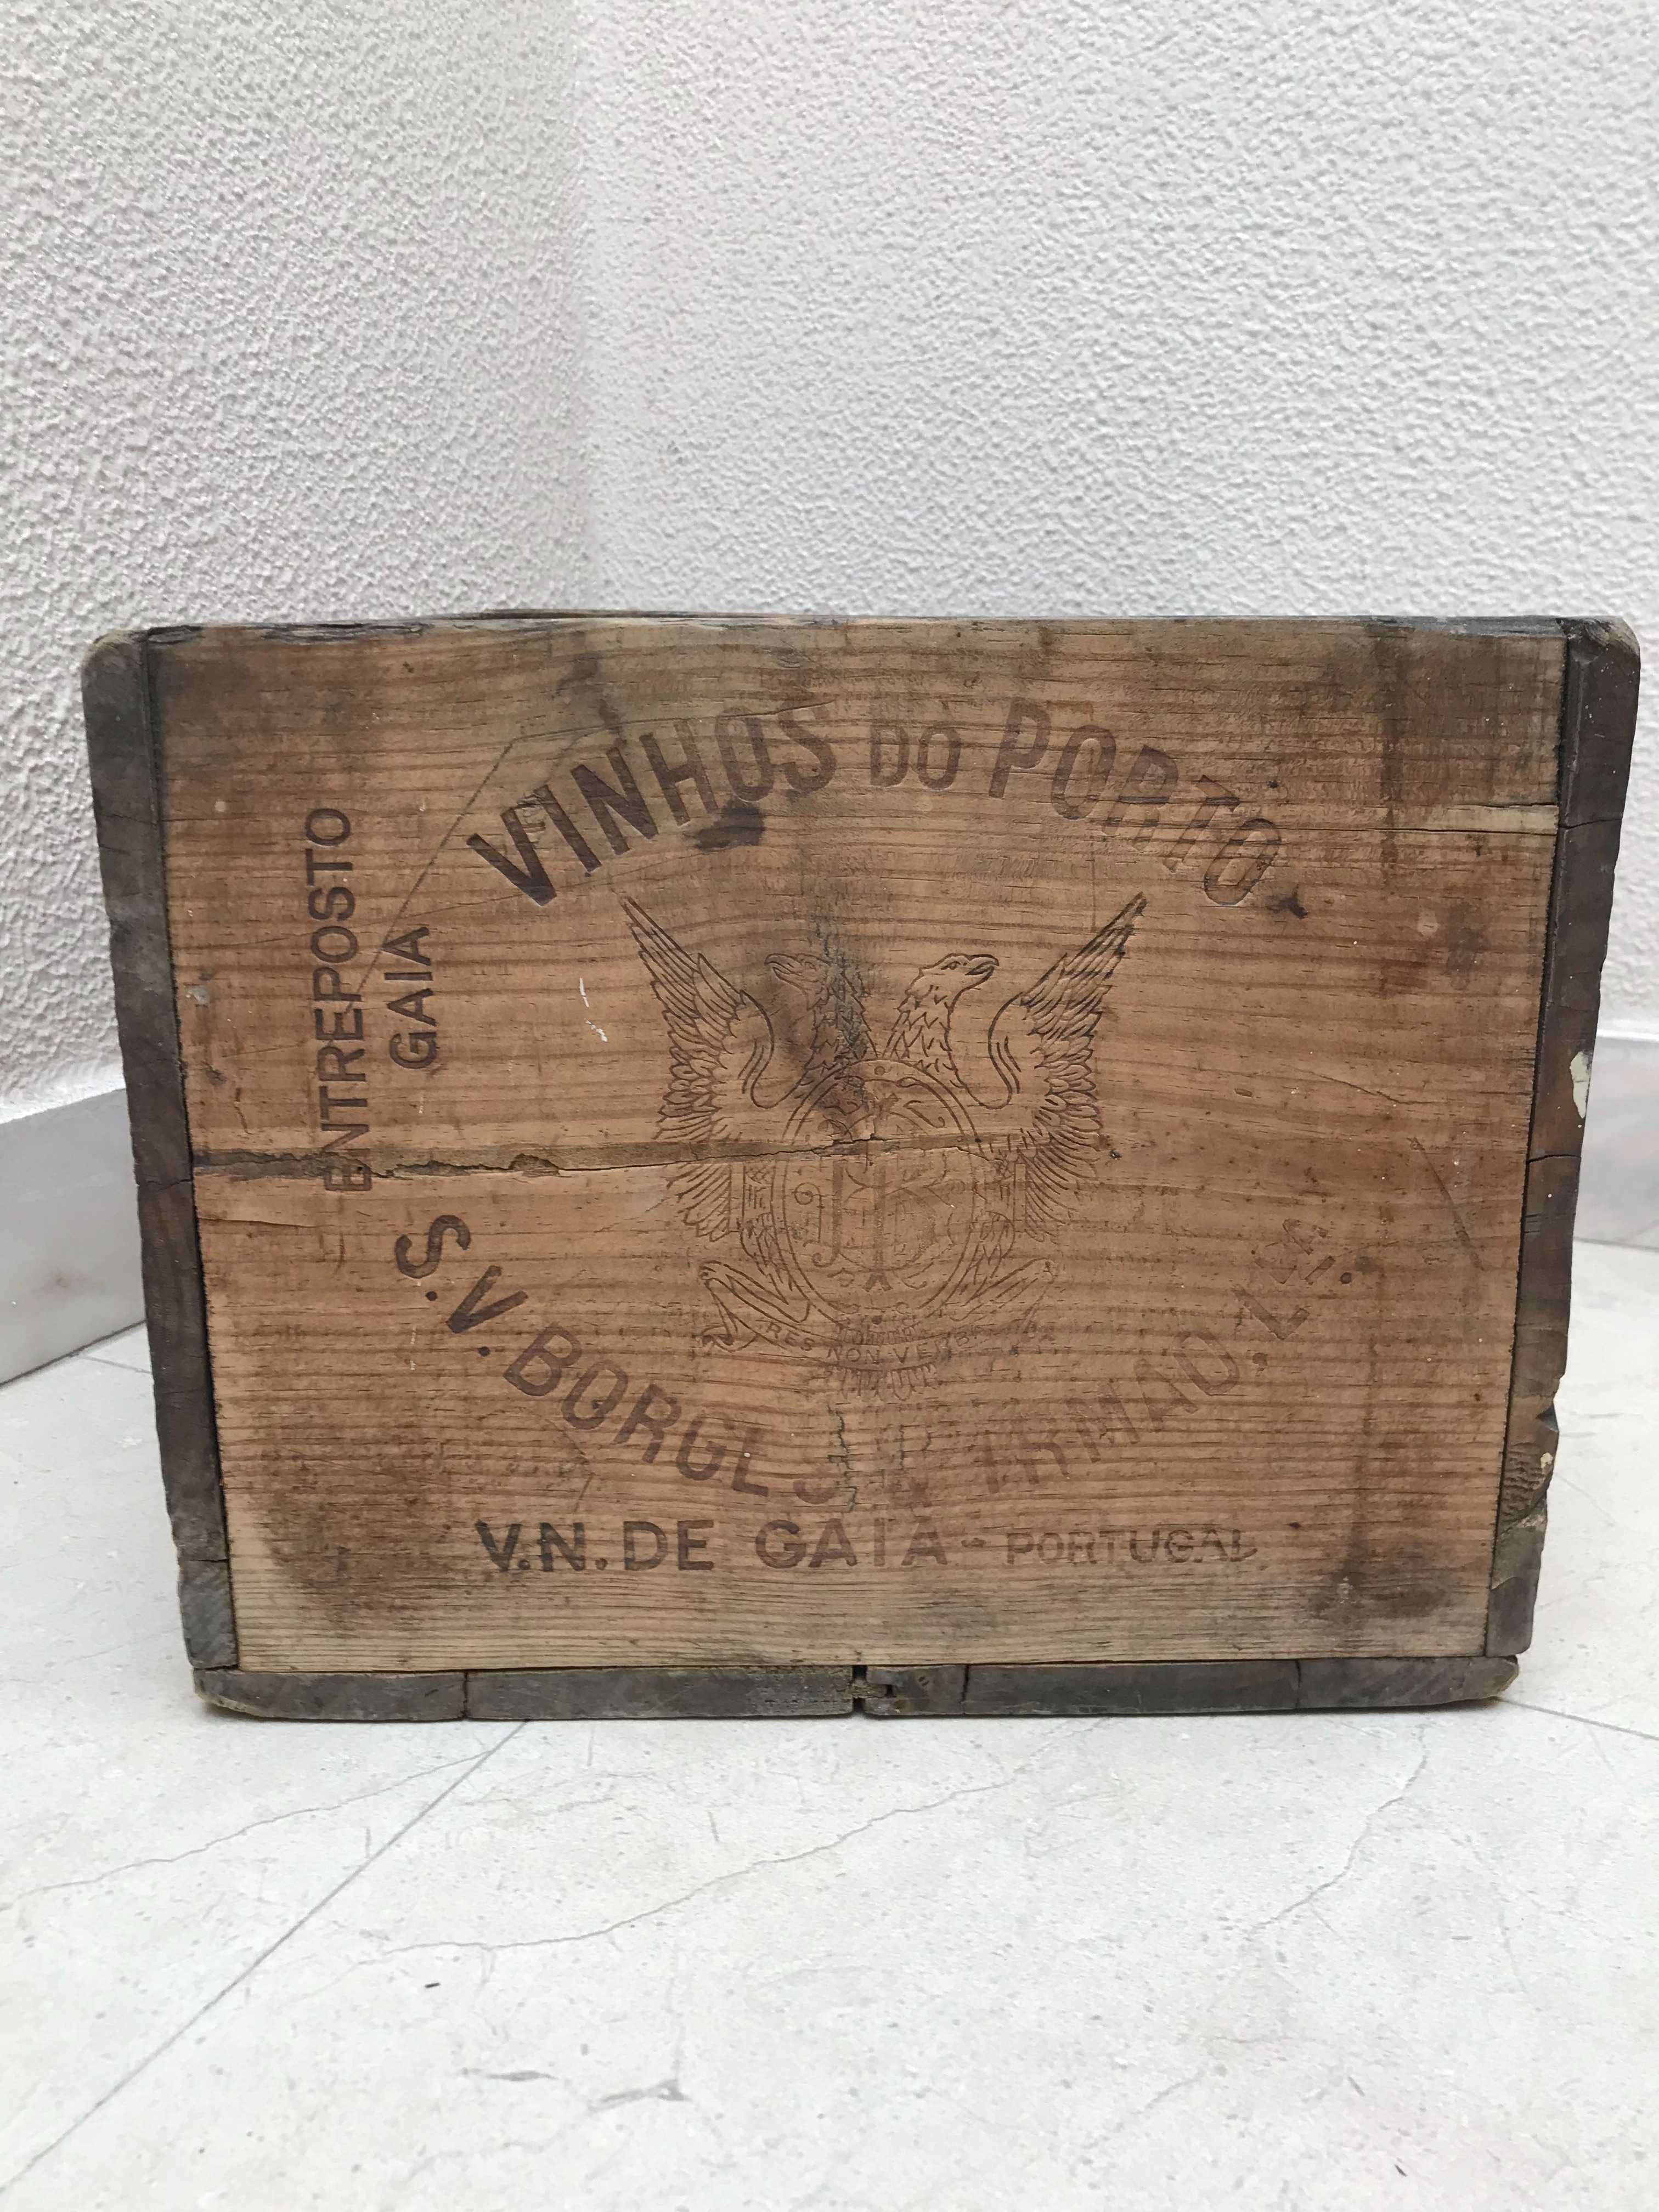 Caixa antiga de madeira, para vinho do Porto marca Borges